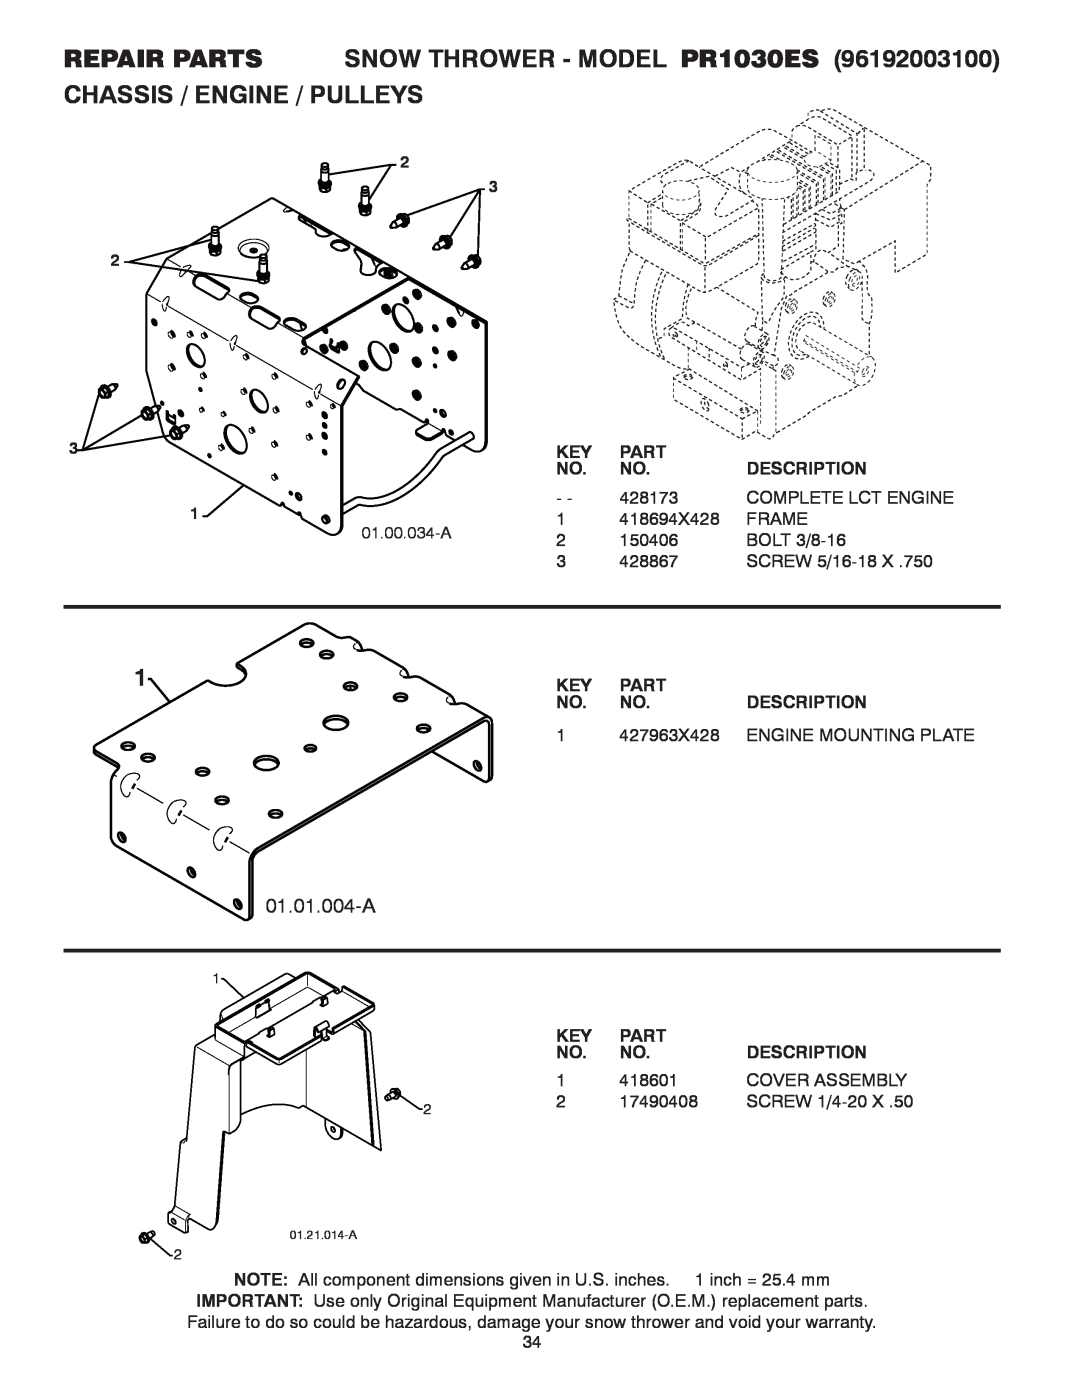 Poulan 96192003100 REPAIR PARTS SNOW THROWER - MODEL PR1030ES CHASSIS / ENGINE / PULLEYS, 01.01.004-A, Part, Description 